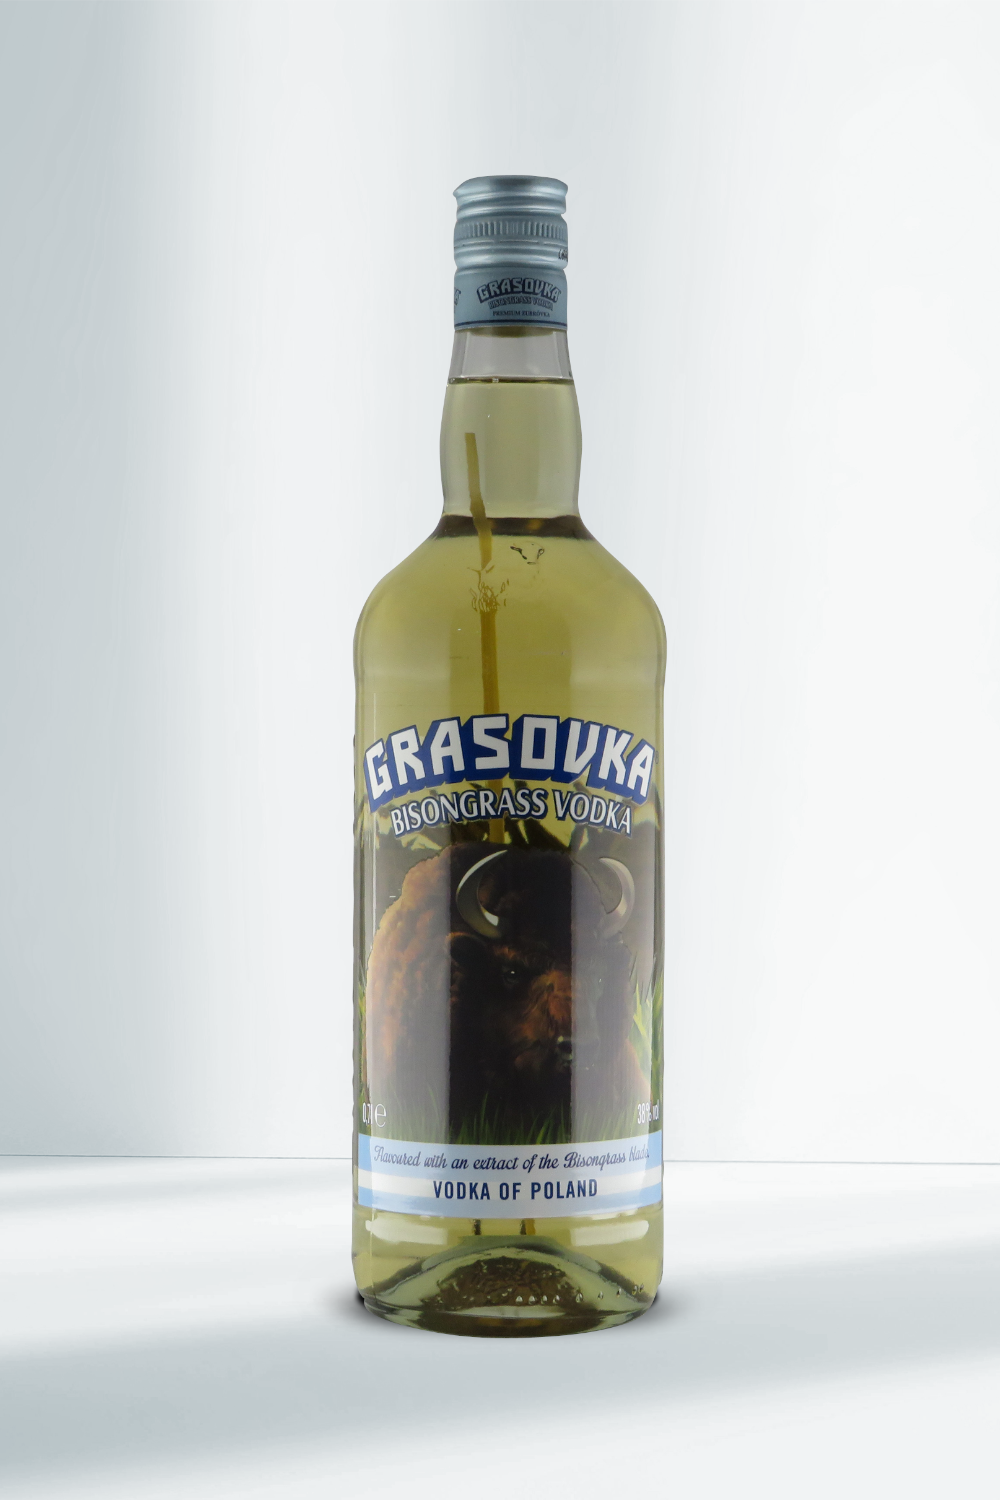 [Sofortige Lieferung! Bis zum halben Preis! ] Grasovka Bisongrass Vodka 38% 0,7l I Beverage-Shop